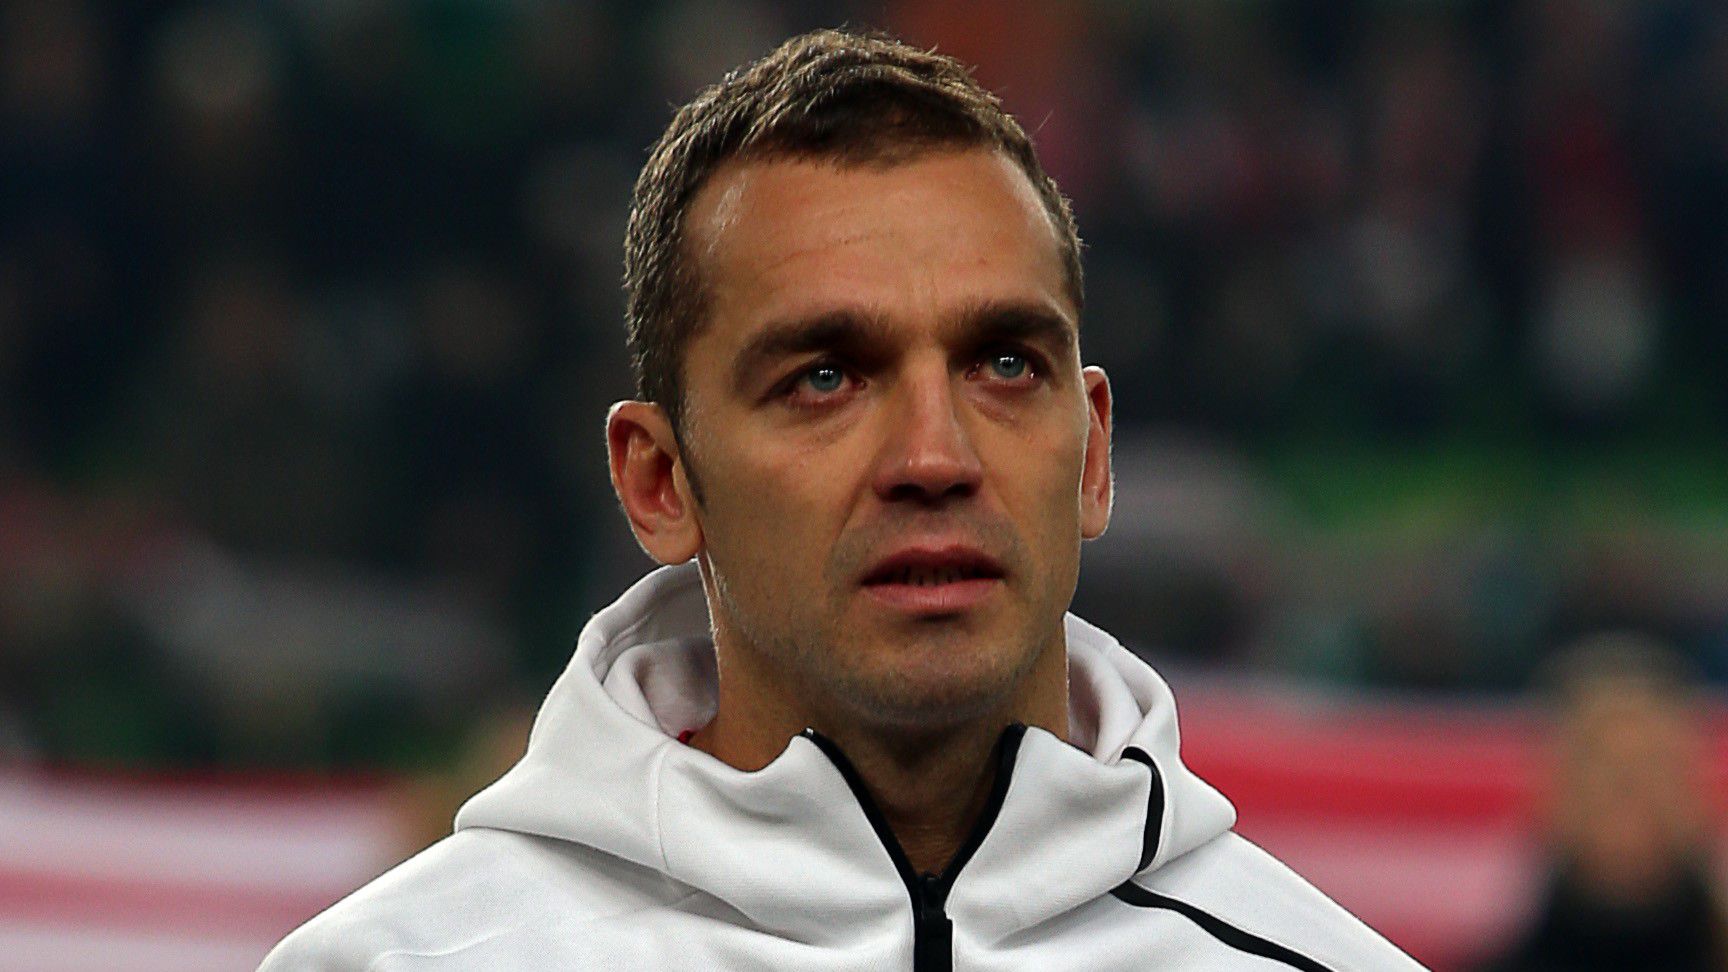 A magyar válogatott játékos a 7. legeredményesebb európai védő a 21. században